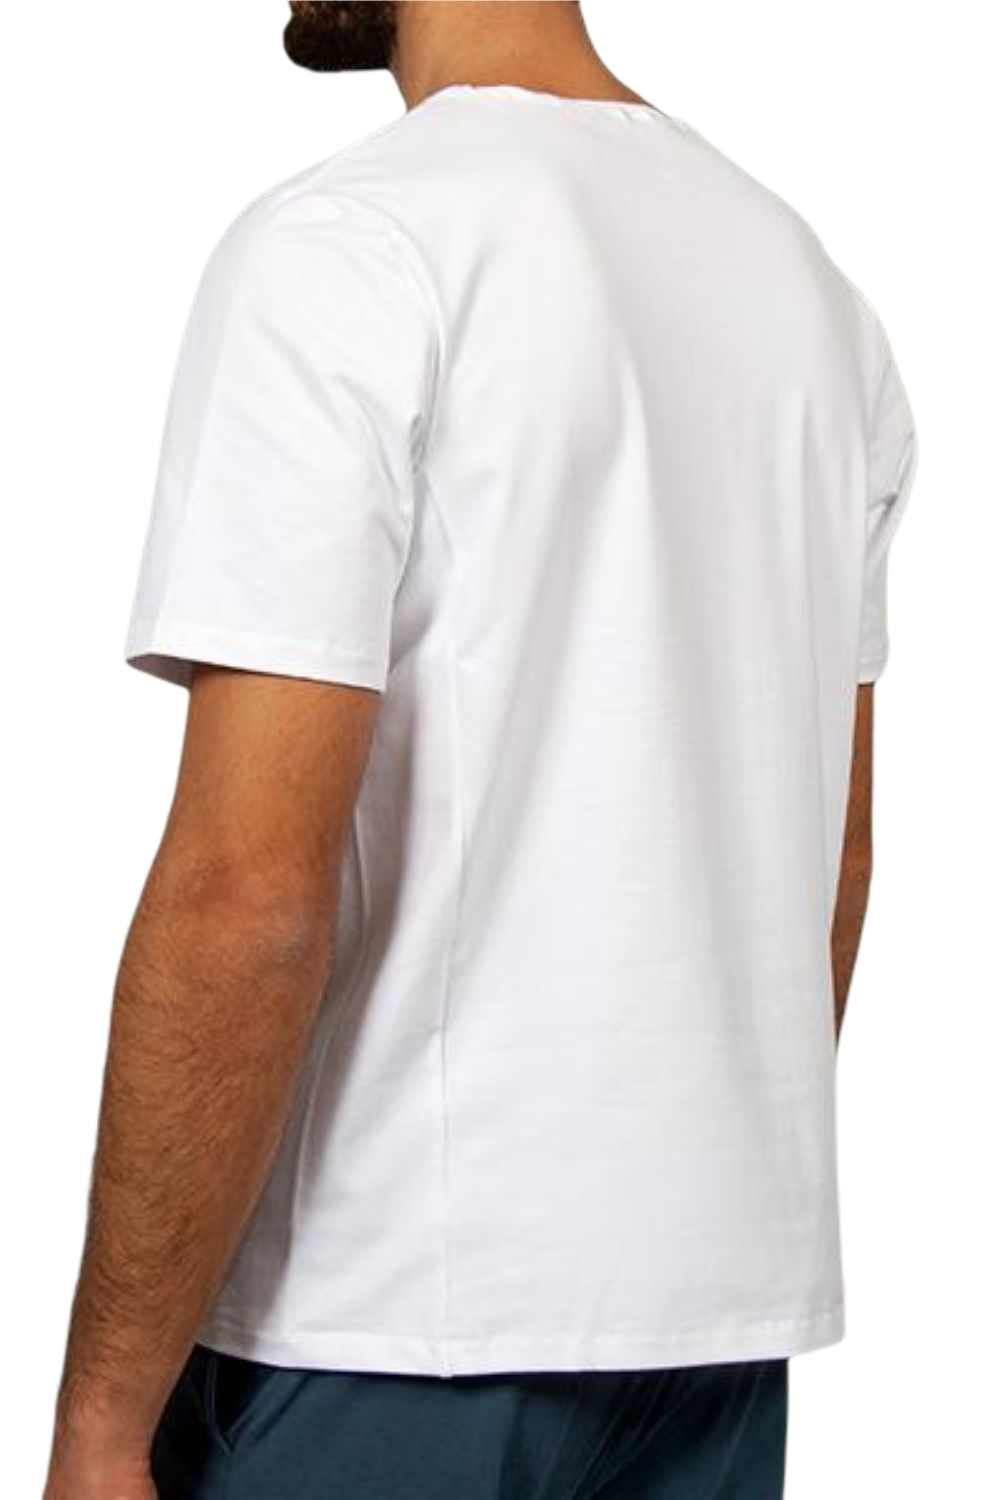 Mahan Shirt für Männer Weiss